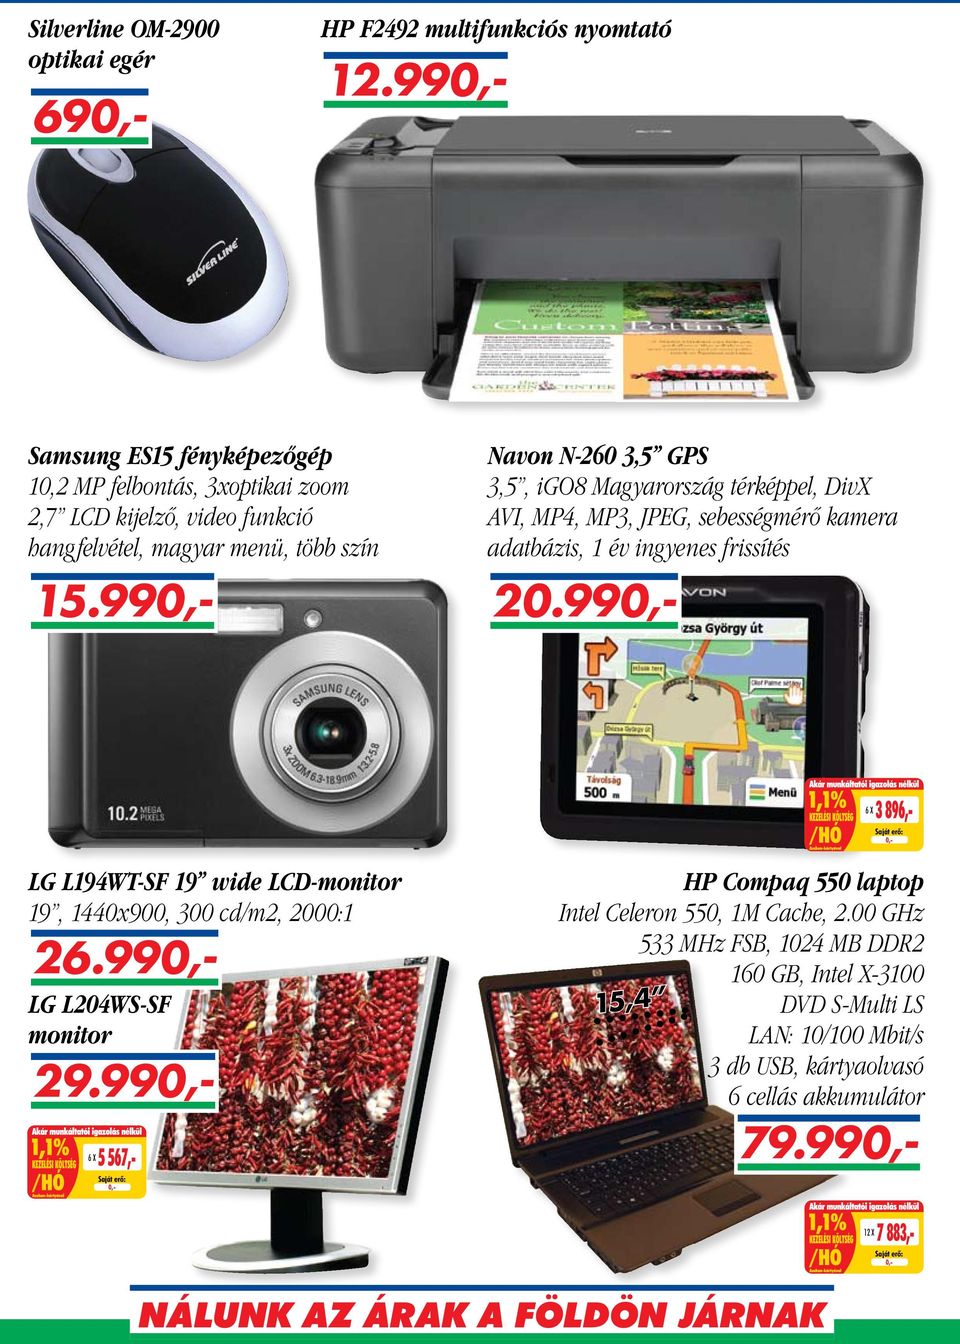 Magyarország térképpel, DivX AVI, MP4, MP3, JPEG, sebességmérő kamera adatbázis, 1 év ingyenes frissítés 6 X 3 896,- LG L194WT-SF 19 wide LCD-monitor 19, 1440x900, 300